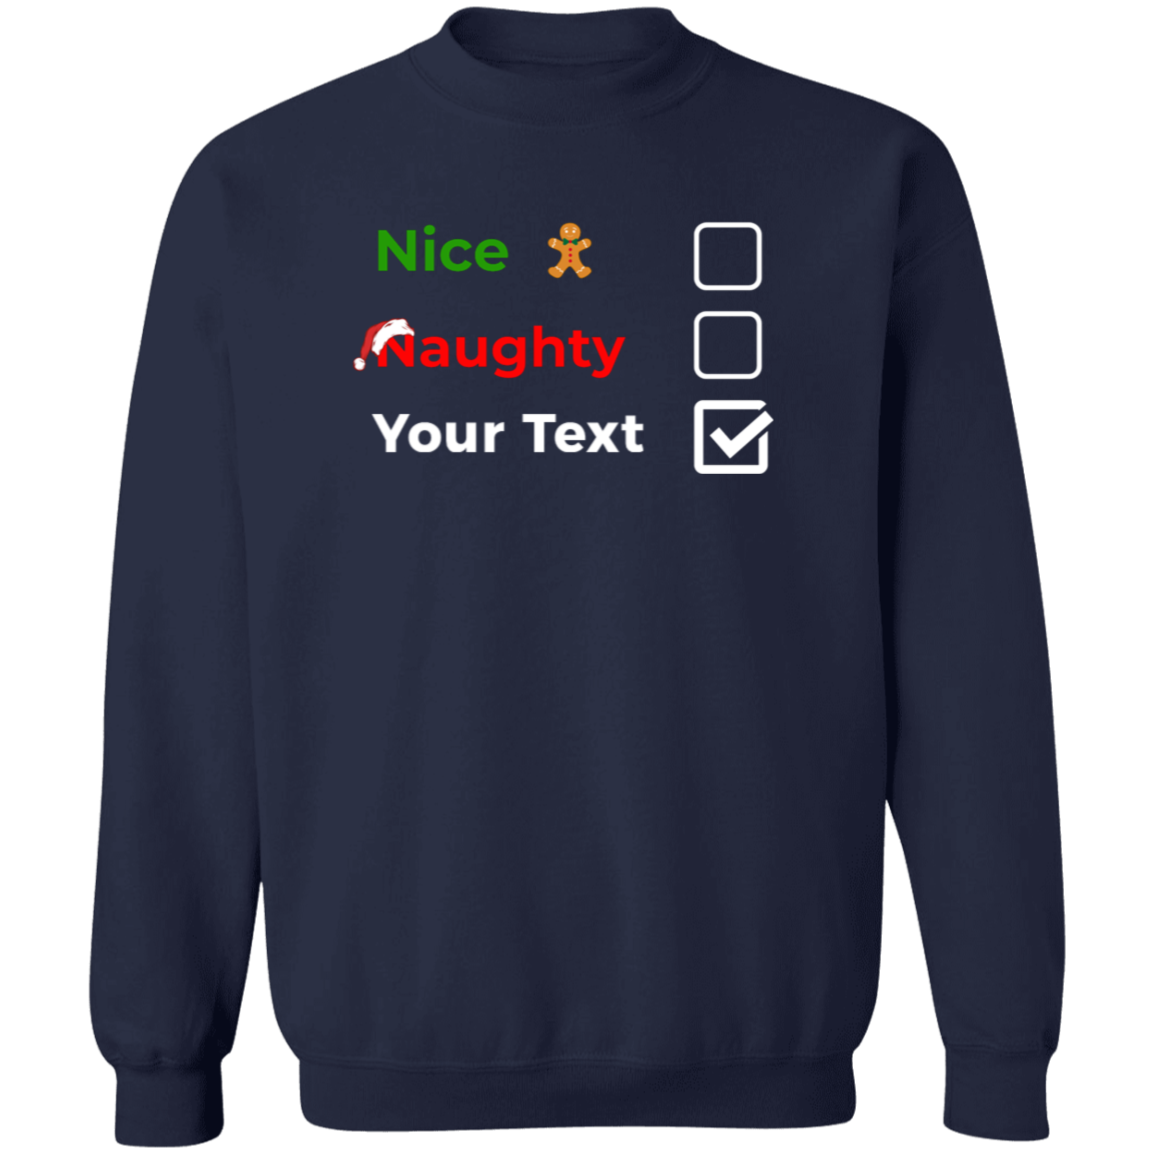 Christmas Sweatshirt | Nice, Naughty, Customize